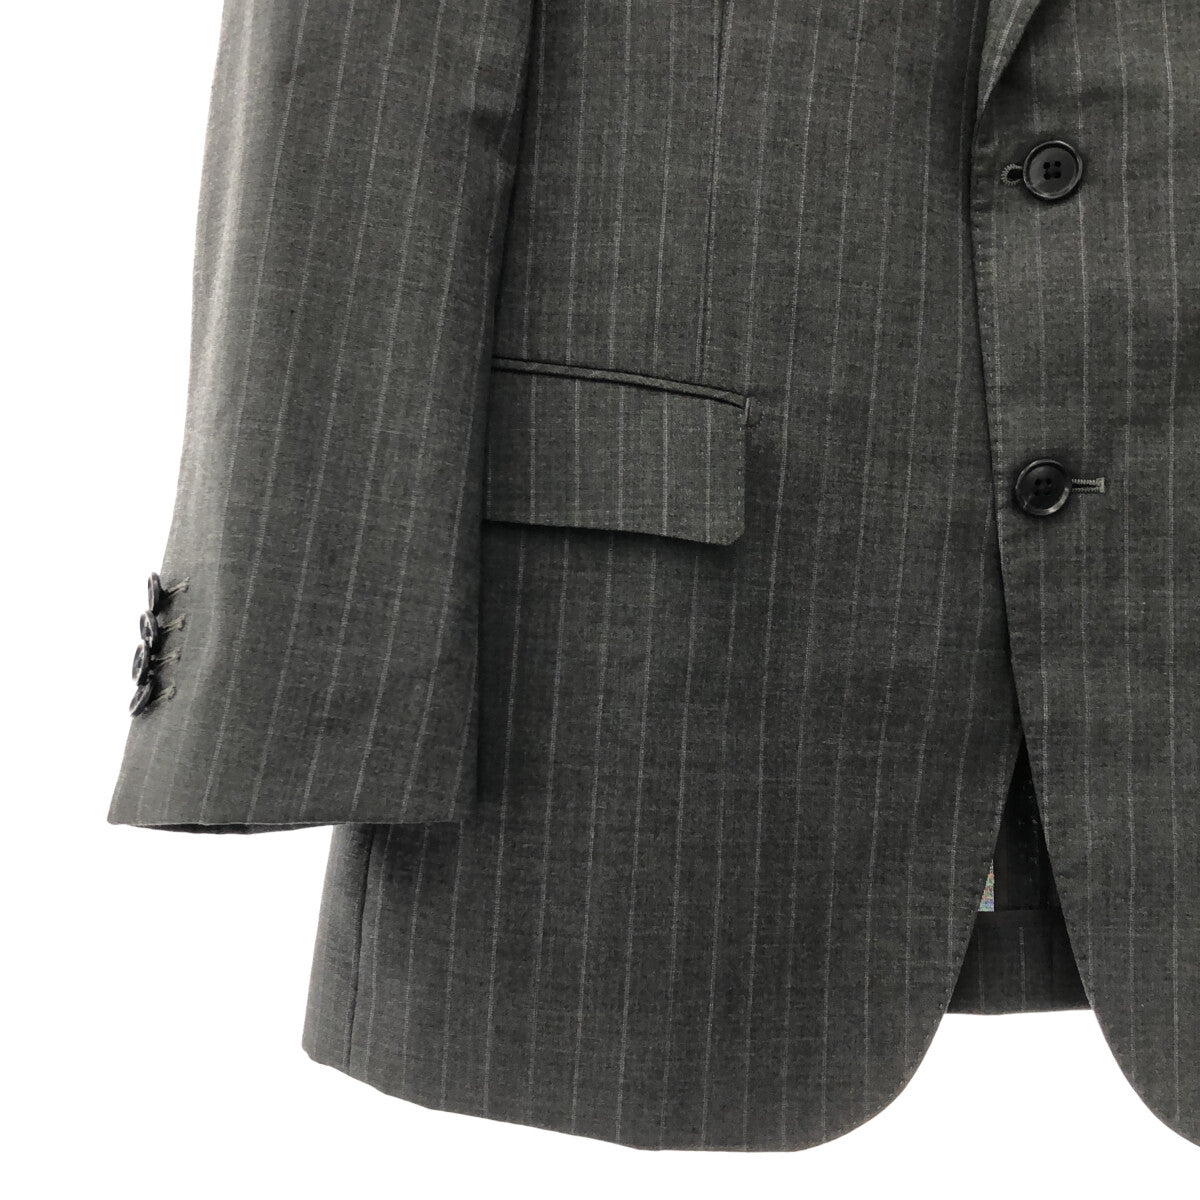 The Suit Company / ザ・スーツカンパニー | 3ピース セットアップ 2B ジャケット / スラックスパンツ | 170 | グレー | メンズ